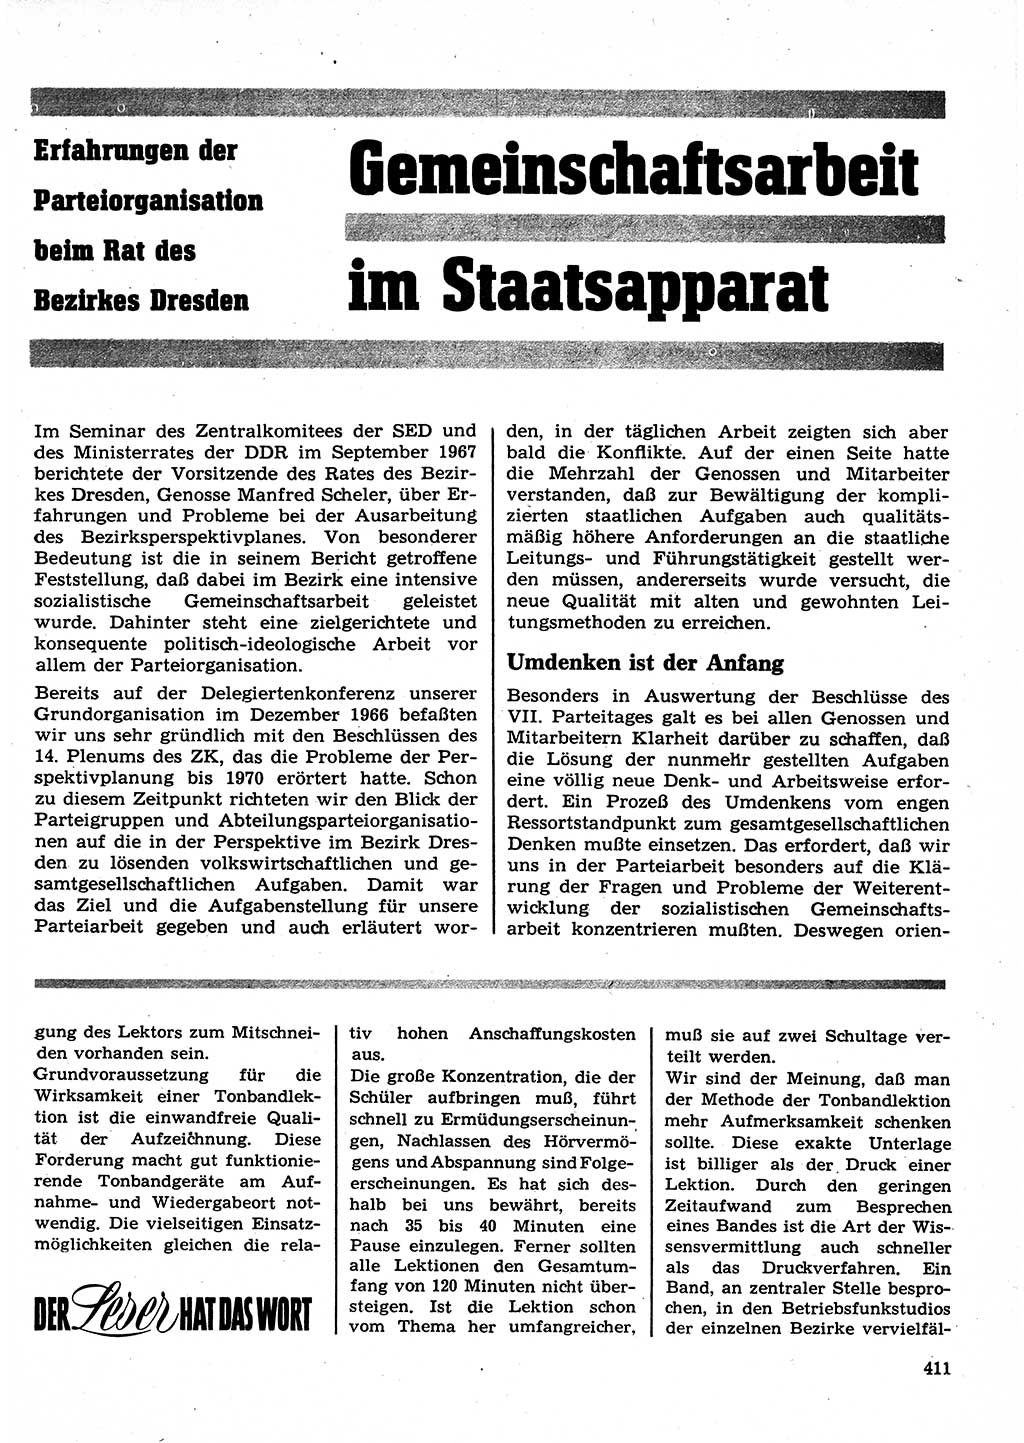 Neuer Weg (NW), Organ des Zentralkomitees (ZK) der SED (Sozialistische Einheitspartei Deutschlands) für Fragen des Parteilebens, 23. Jahrgang [Deutsche Demokratische Republik (DDR)] 1968, Seite 411 (NW ZK SED DDR 1968, S. 411)